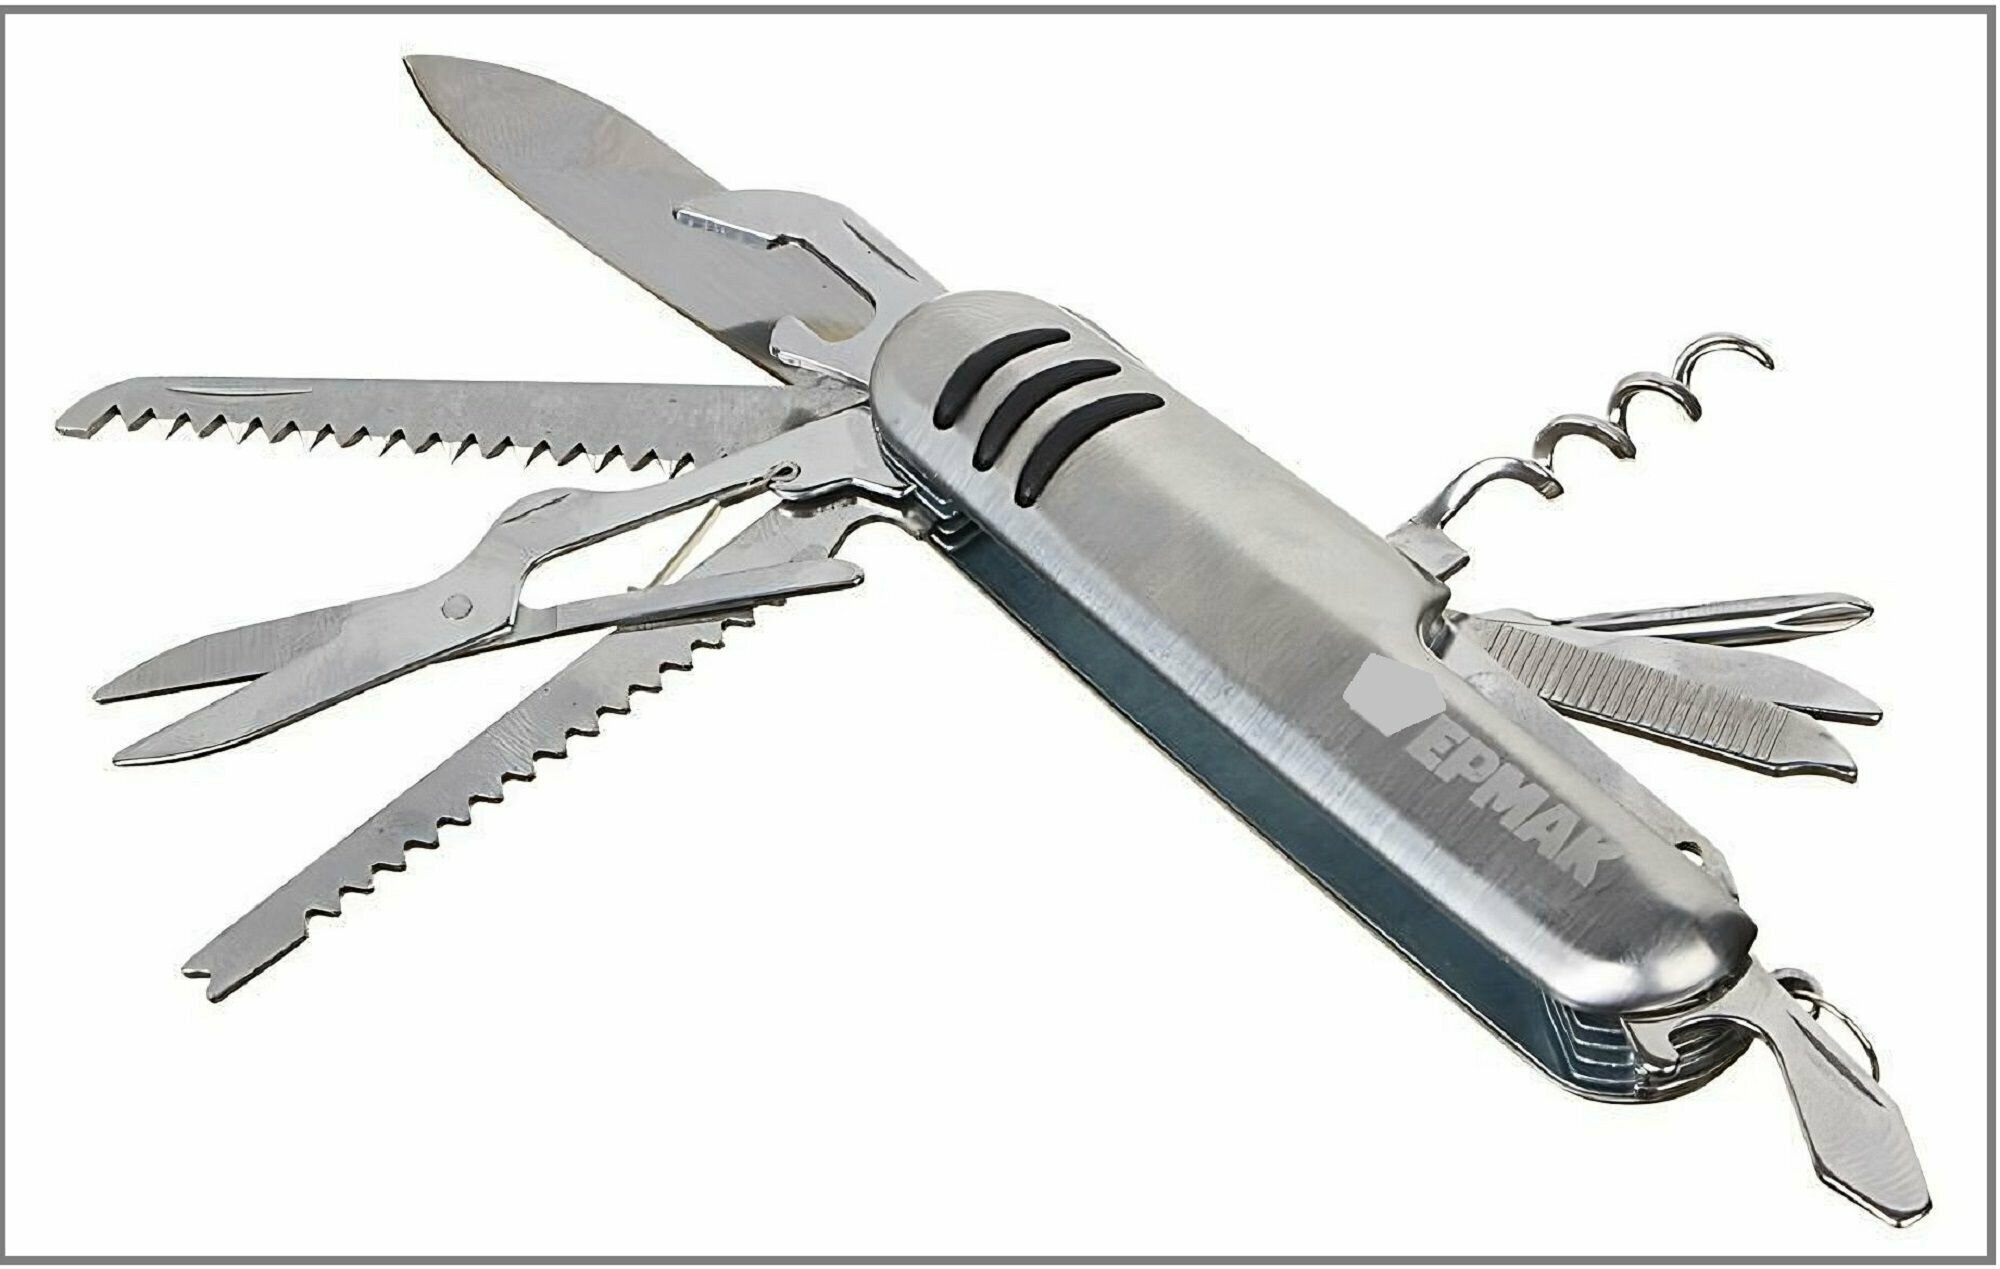 Нож перочинный "Ермак", 15 см, нержавеющая сталь, 11 функций. Мультитул для туризма, отдыха, путешествий, пикников, домашнего хозяйства